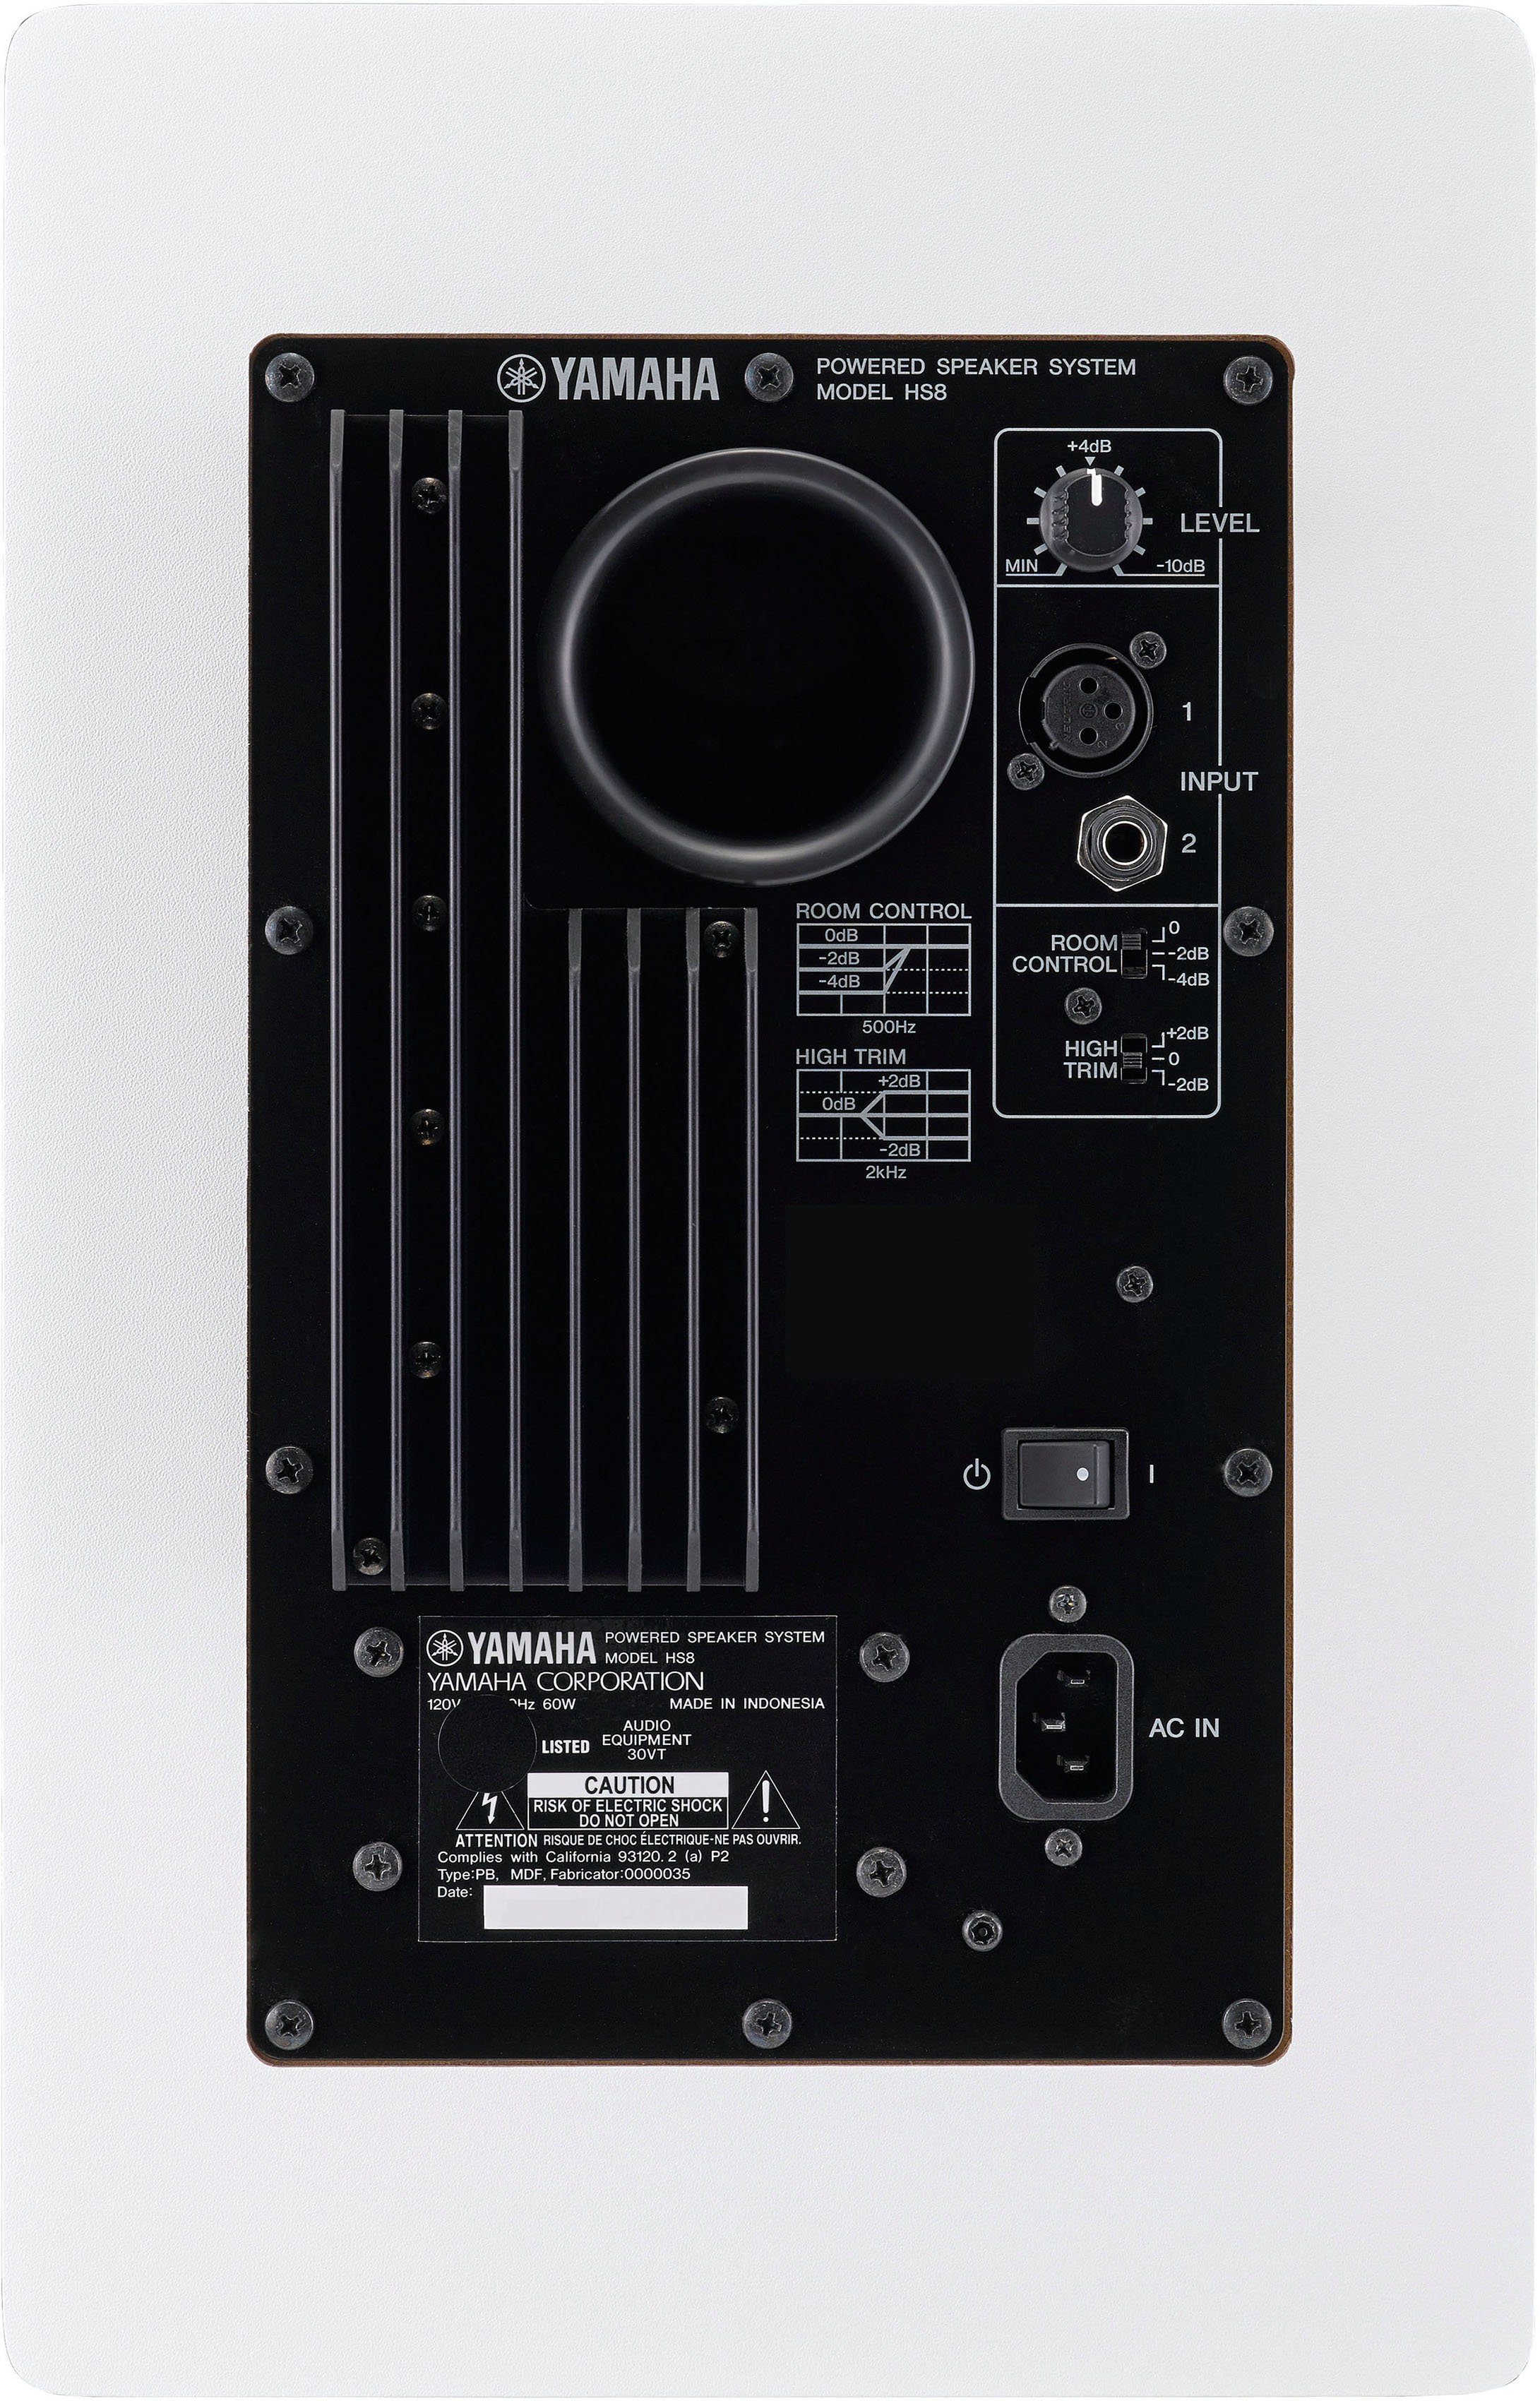 Monitor authentische Studio Box Yamaha Klang (hochauflösender HS8W Lautsprecher und Wiedergabe)